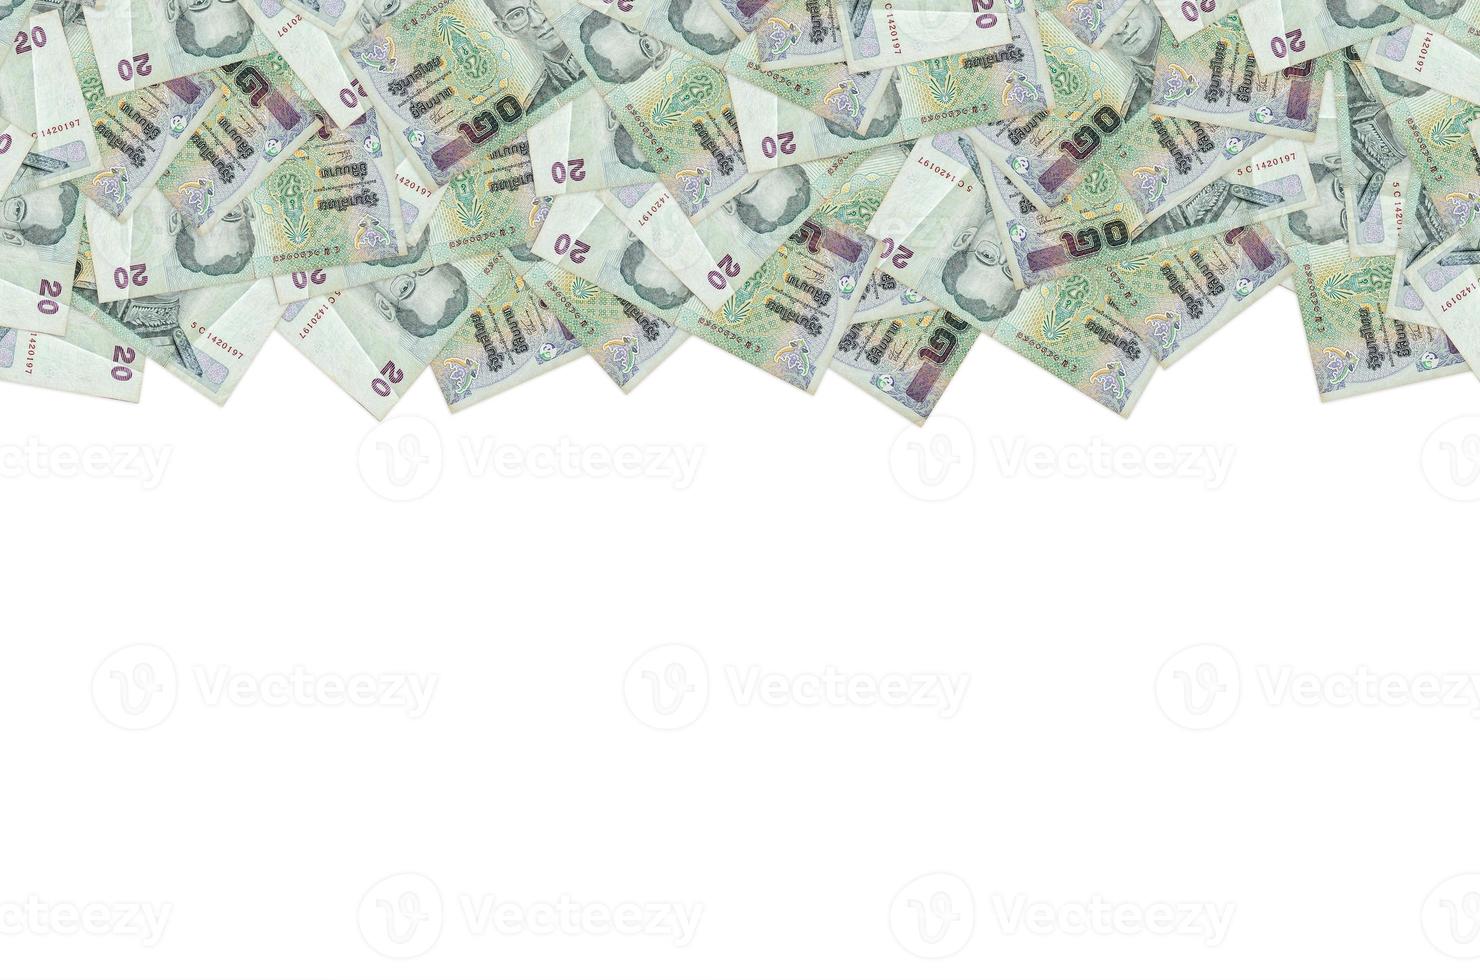 koning bhumibol adulyadej Aan 20 baht Thailand geld Bill dichtbij omhoog foto